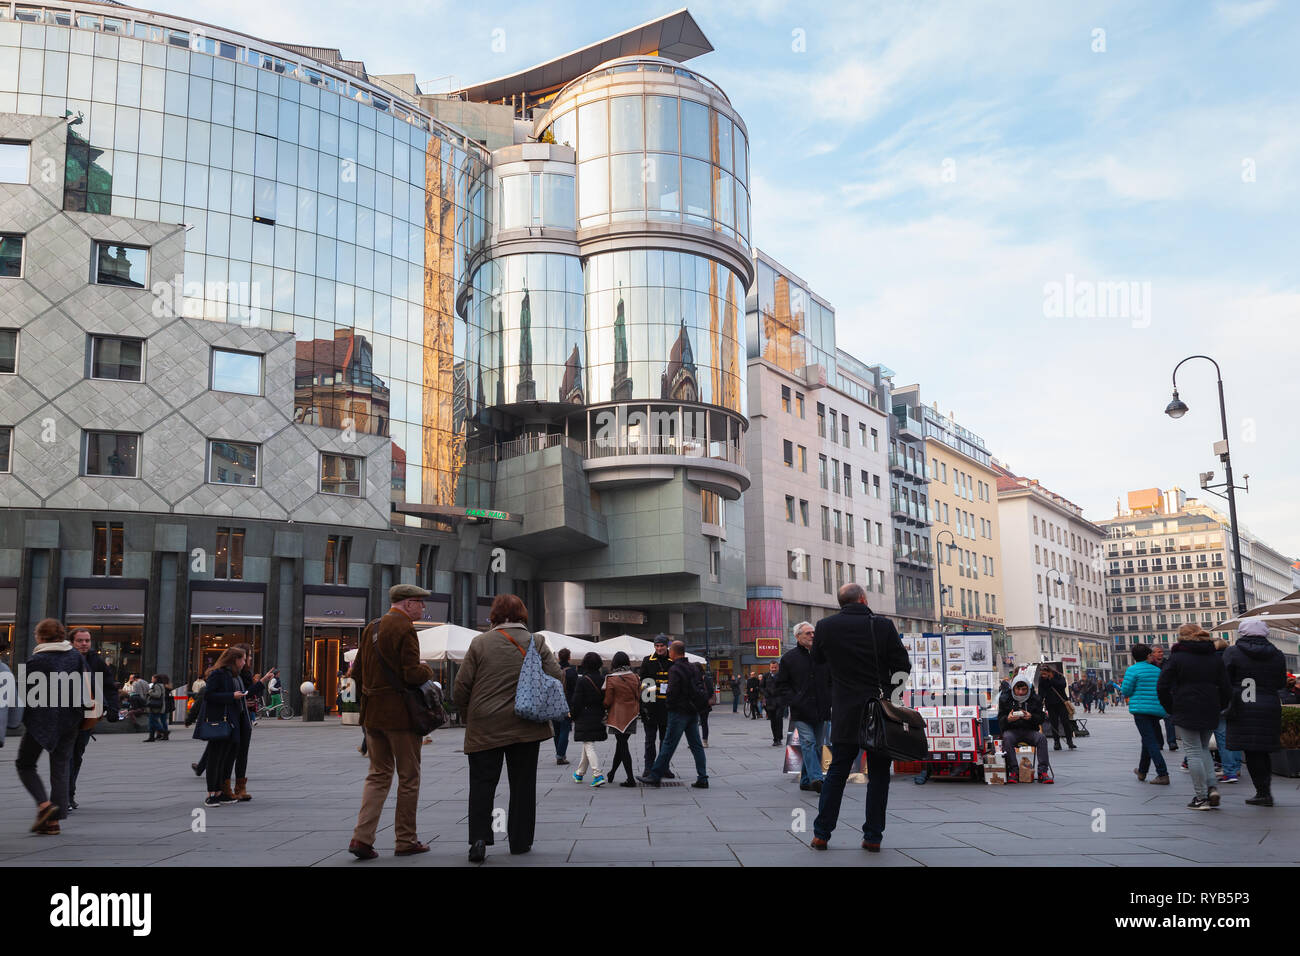 Viena, Austria - Noviembre 4, 2015: Los turistas y gente de la calle paseo en la Stephansplatz, es un cuadrado en el centro geográfico de Viena Foto de stock